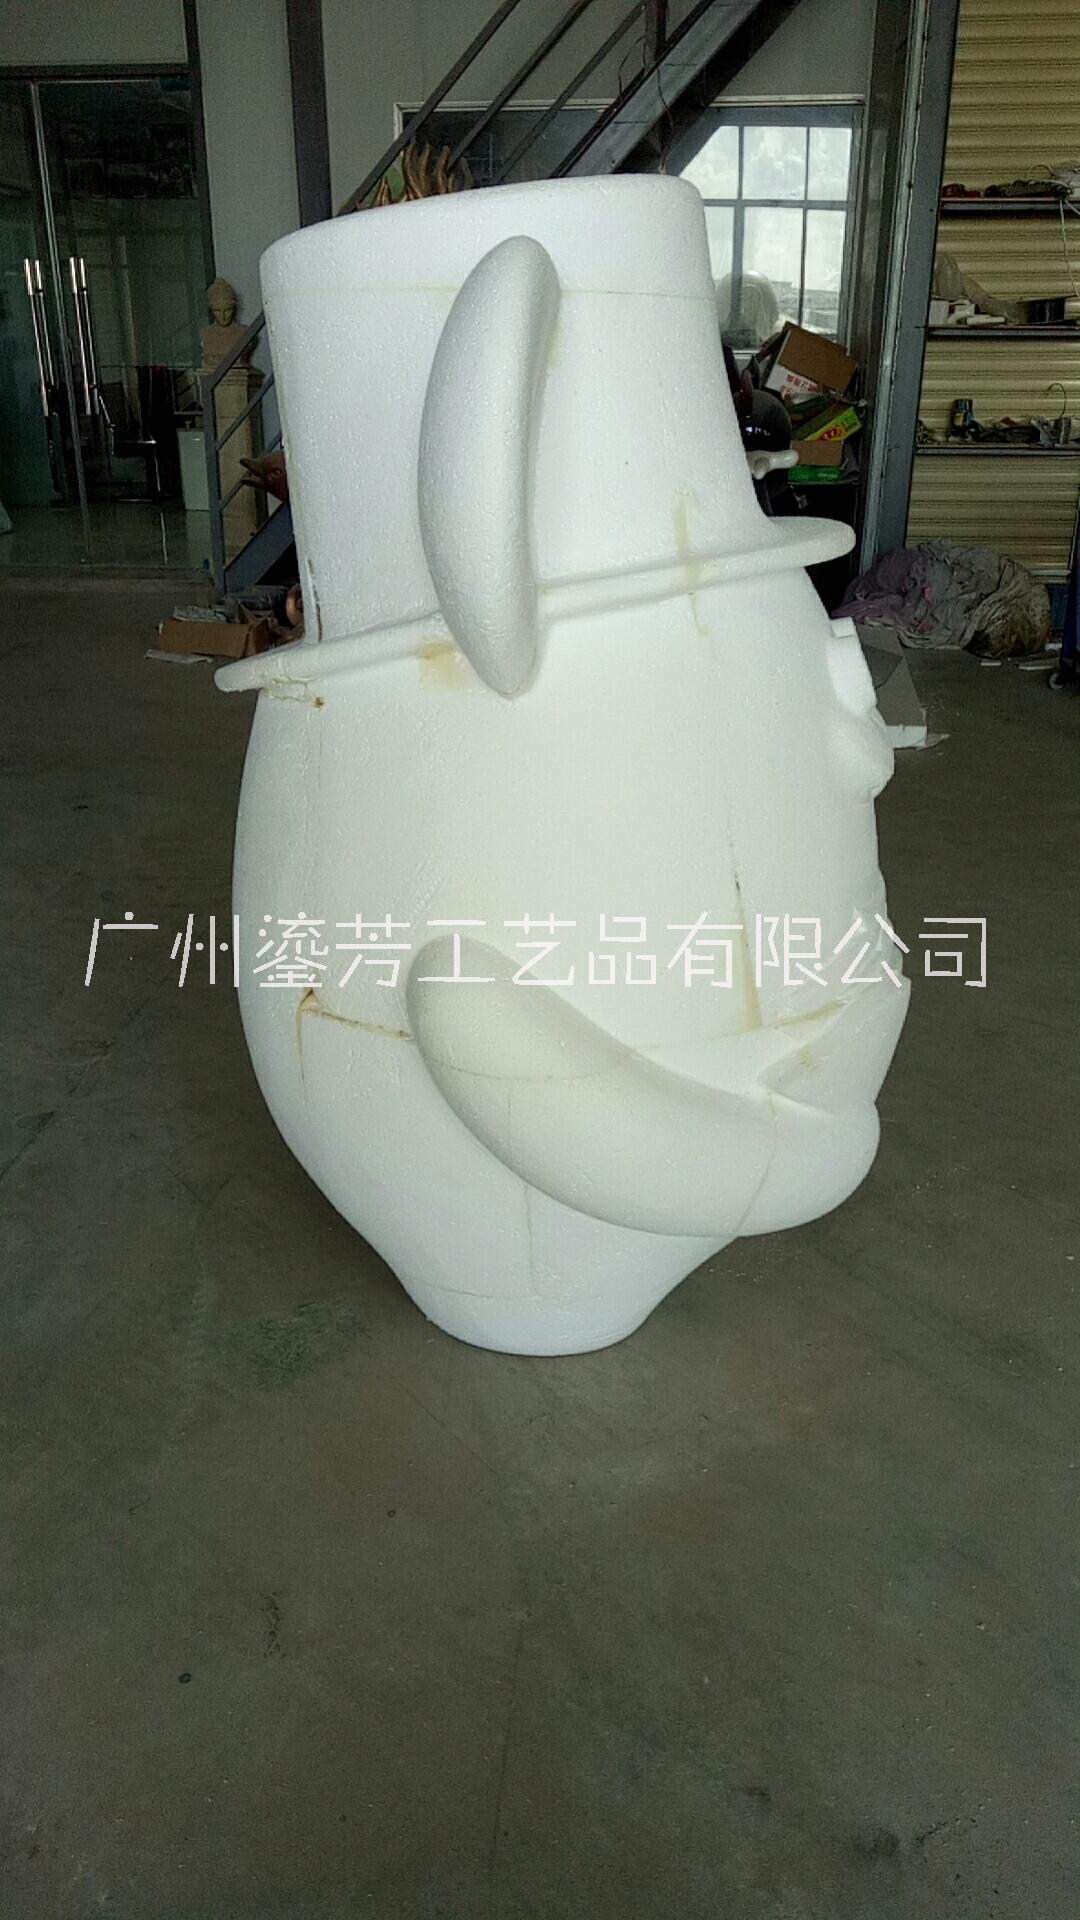 广州市展会模型展览道具泡沫雕刻仿真雕塑厂家